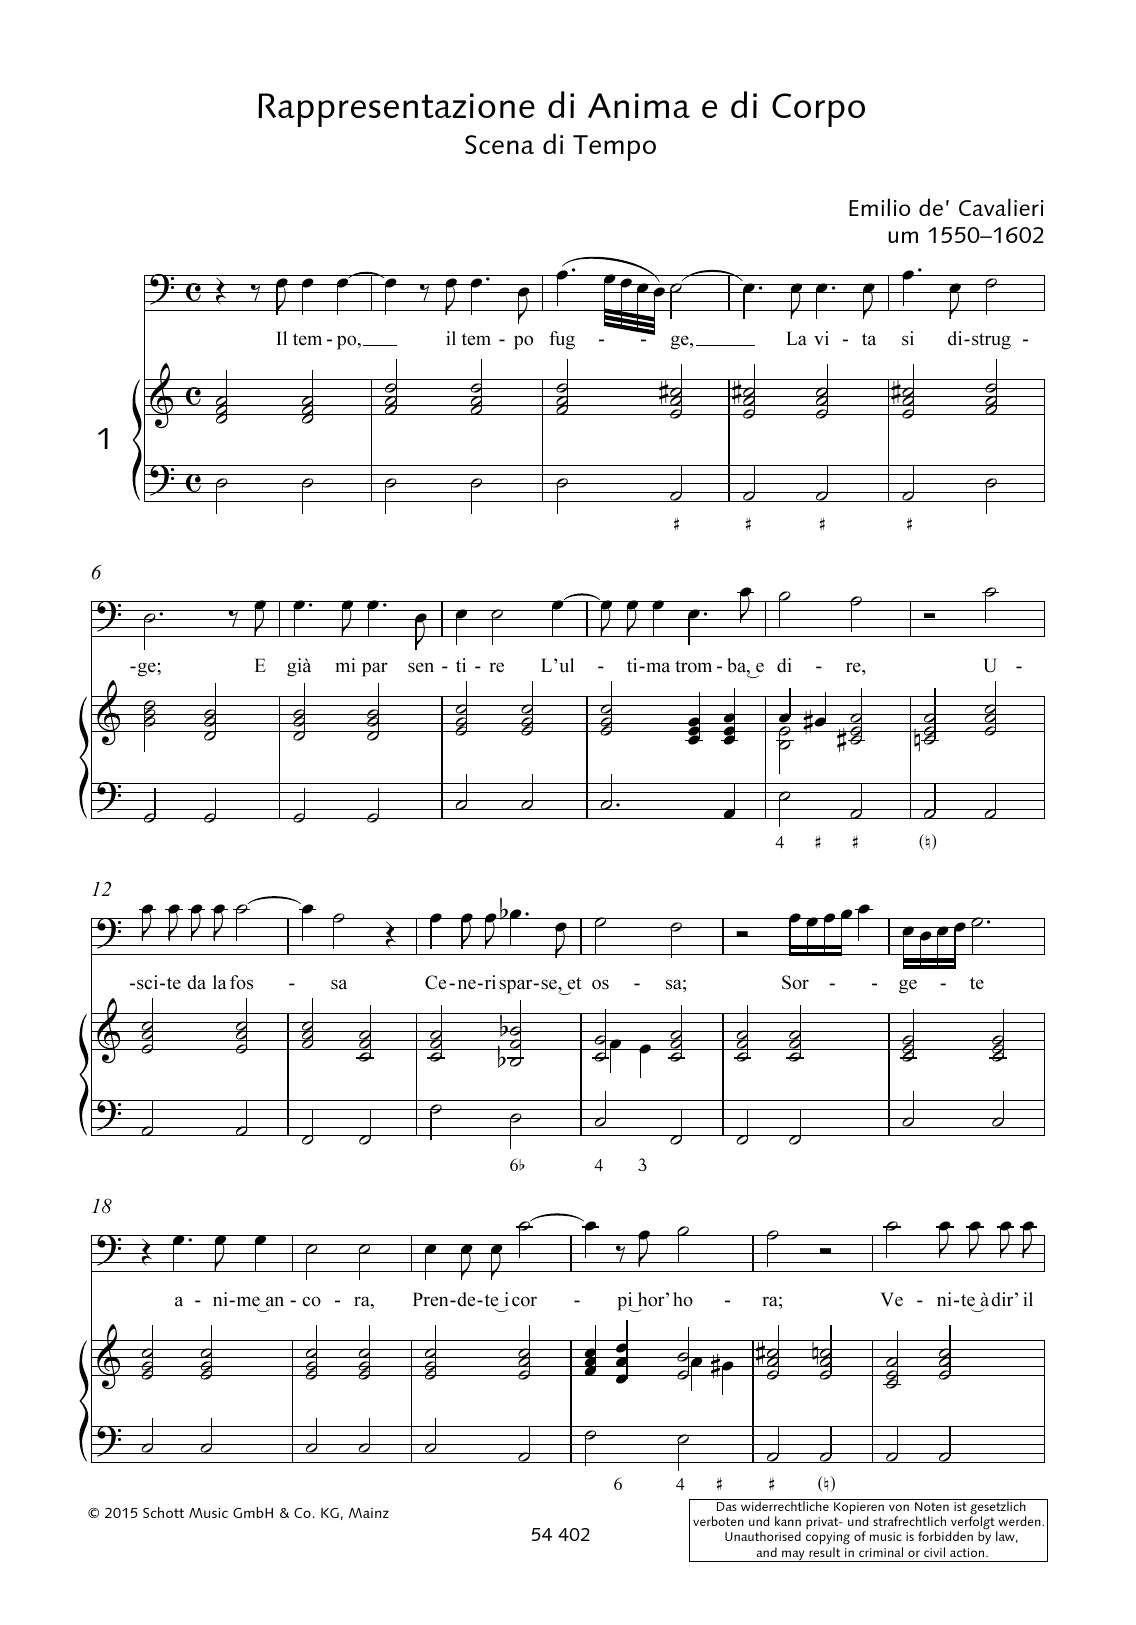 Emilio de Cavalieri Il tempo fugge, La vita si distrugge Sheet Music Notes & Chords for Piano & Vocal - Download or Print PDF